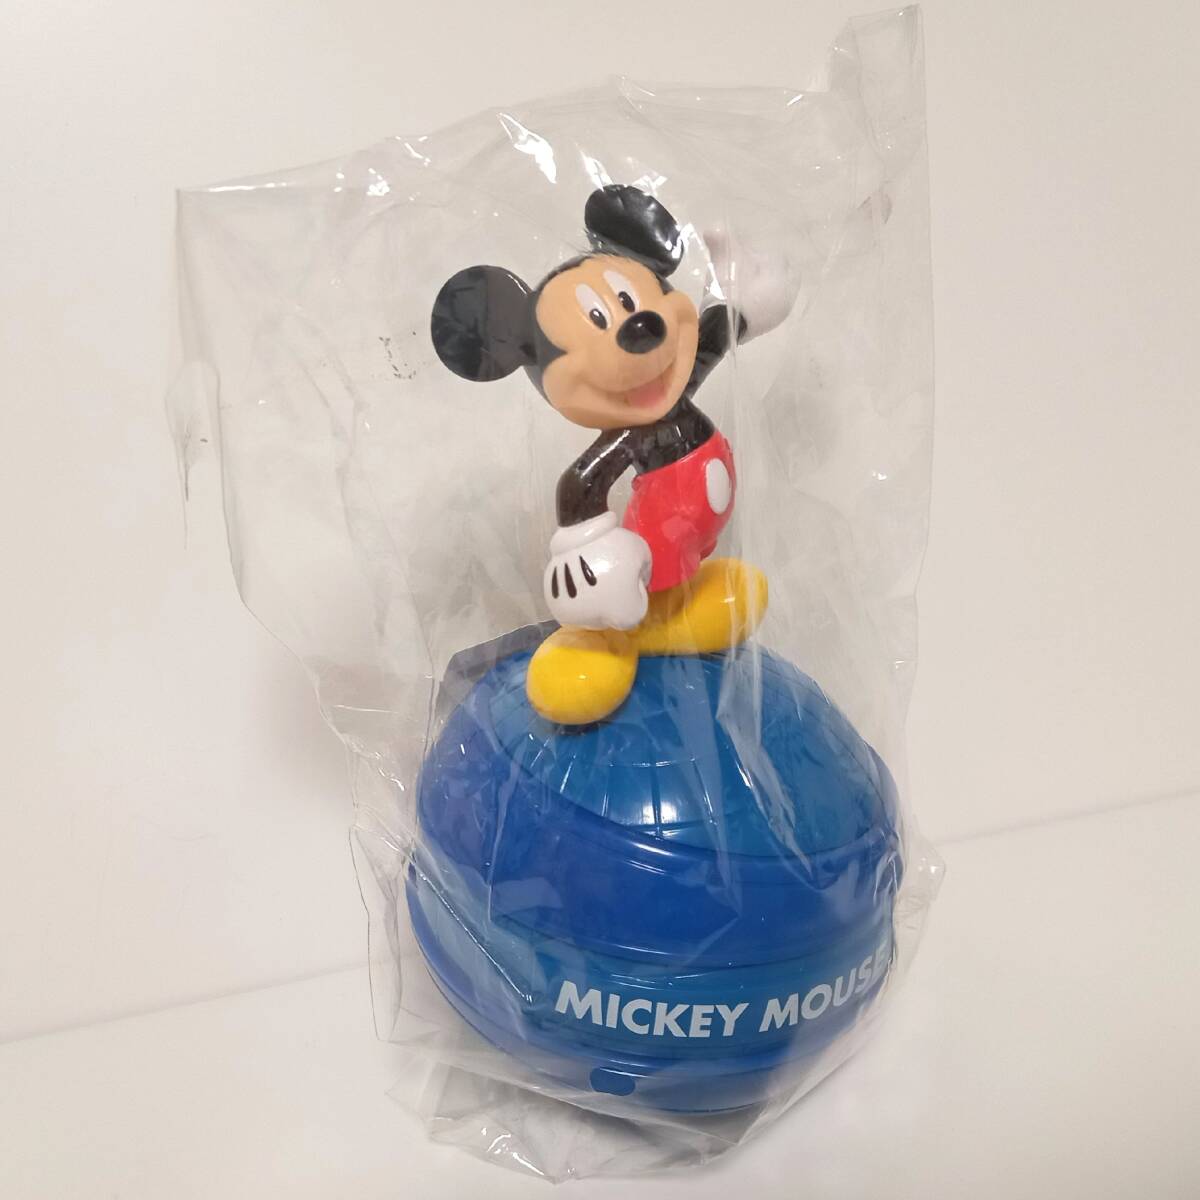 【AIKU-YA】ディズニー ミッキーマウス 貯金箱 ミッキー ディズニーキャラクター貯金箱の画像1